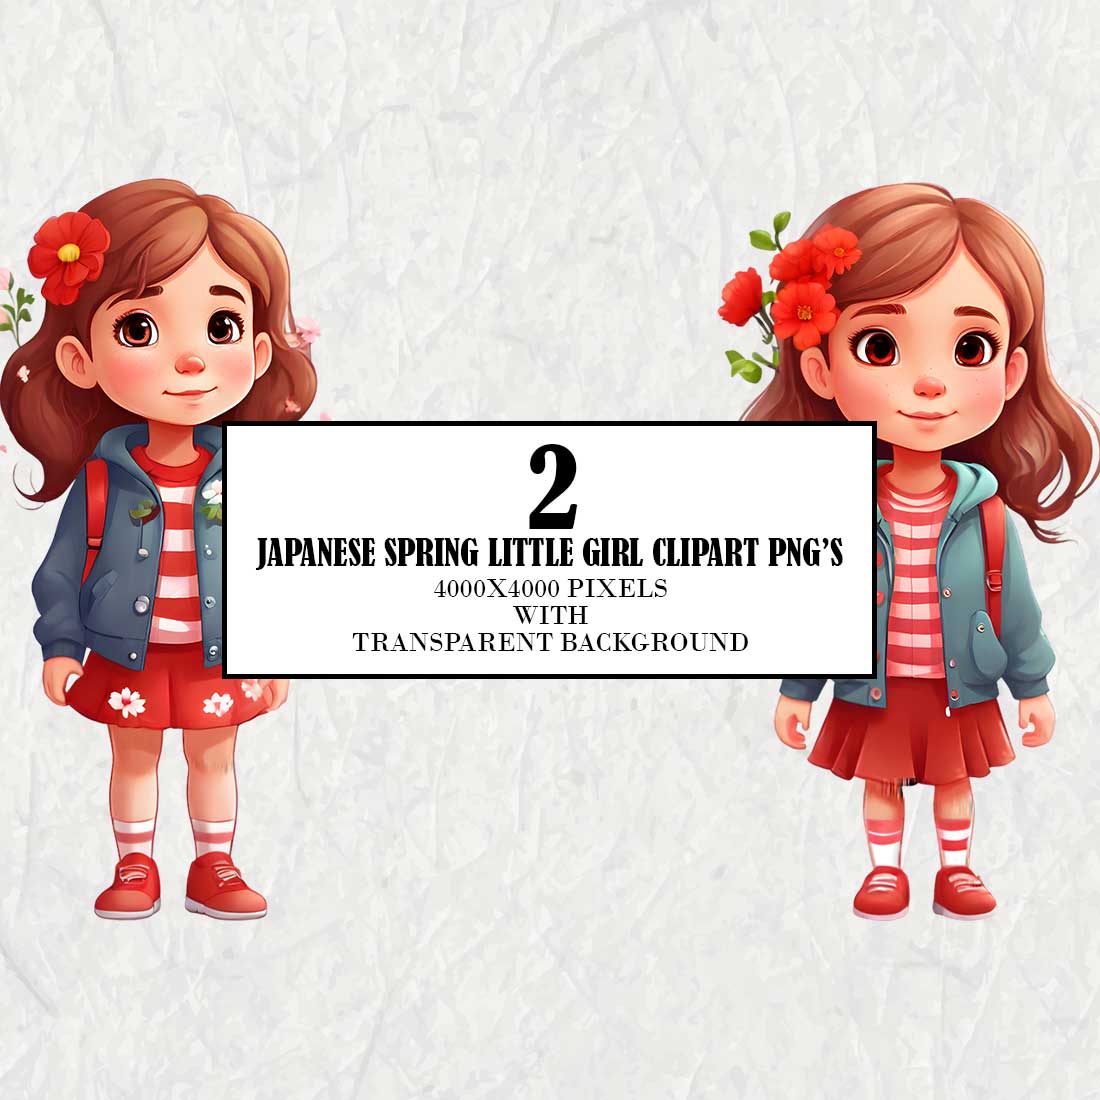 Japanese Little Spring Girl Clipart cover image.